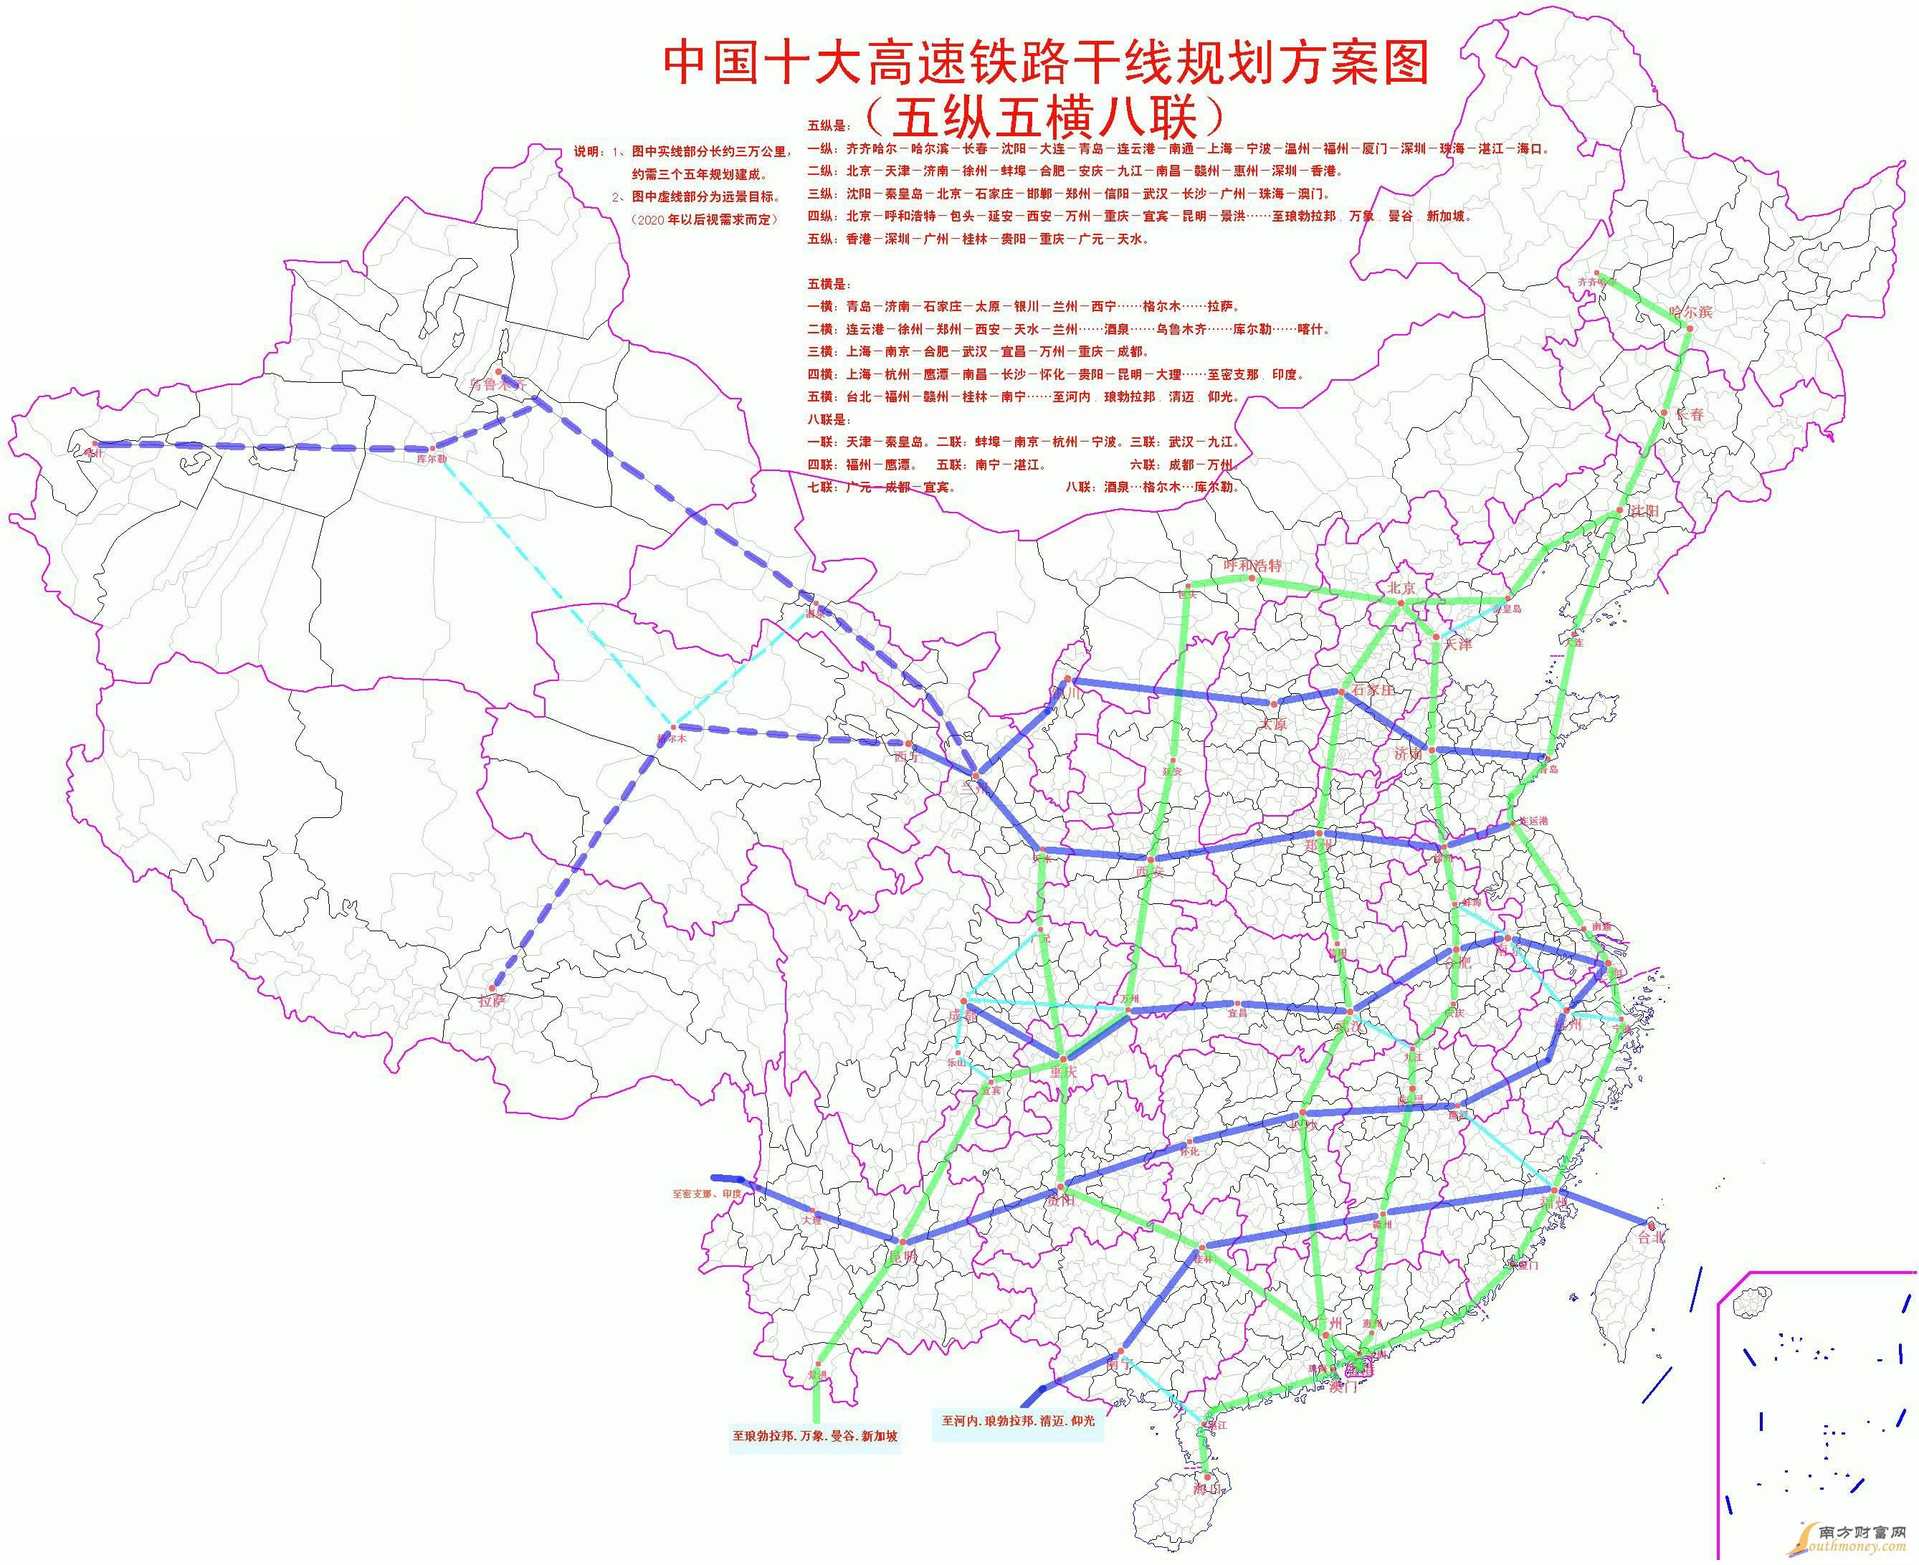 极简中国铁路发展史_搜狐历史_搜狐网